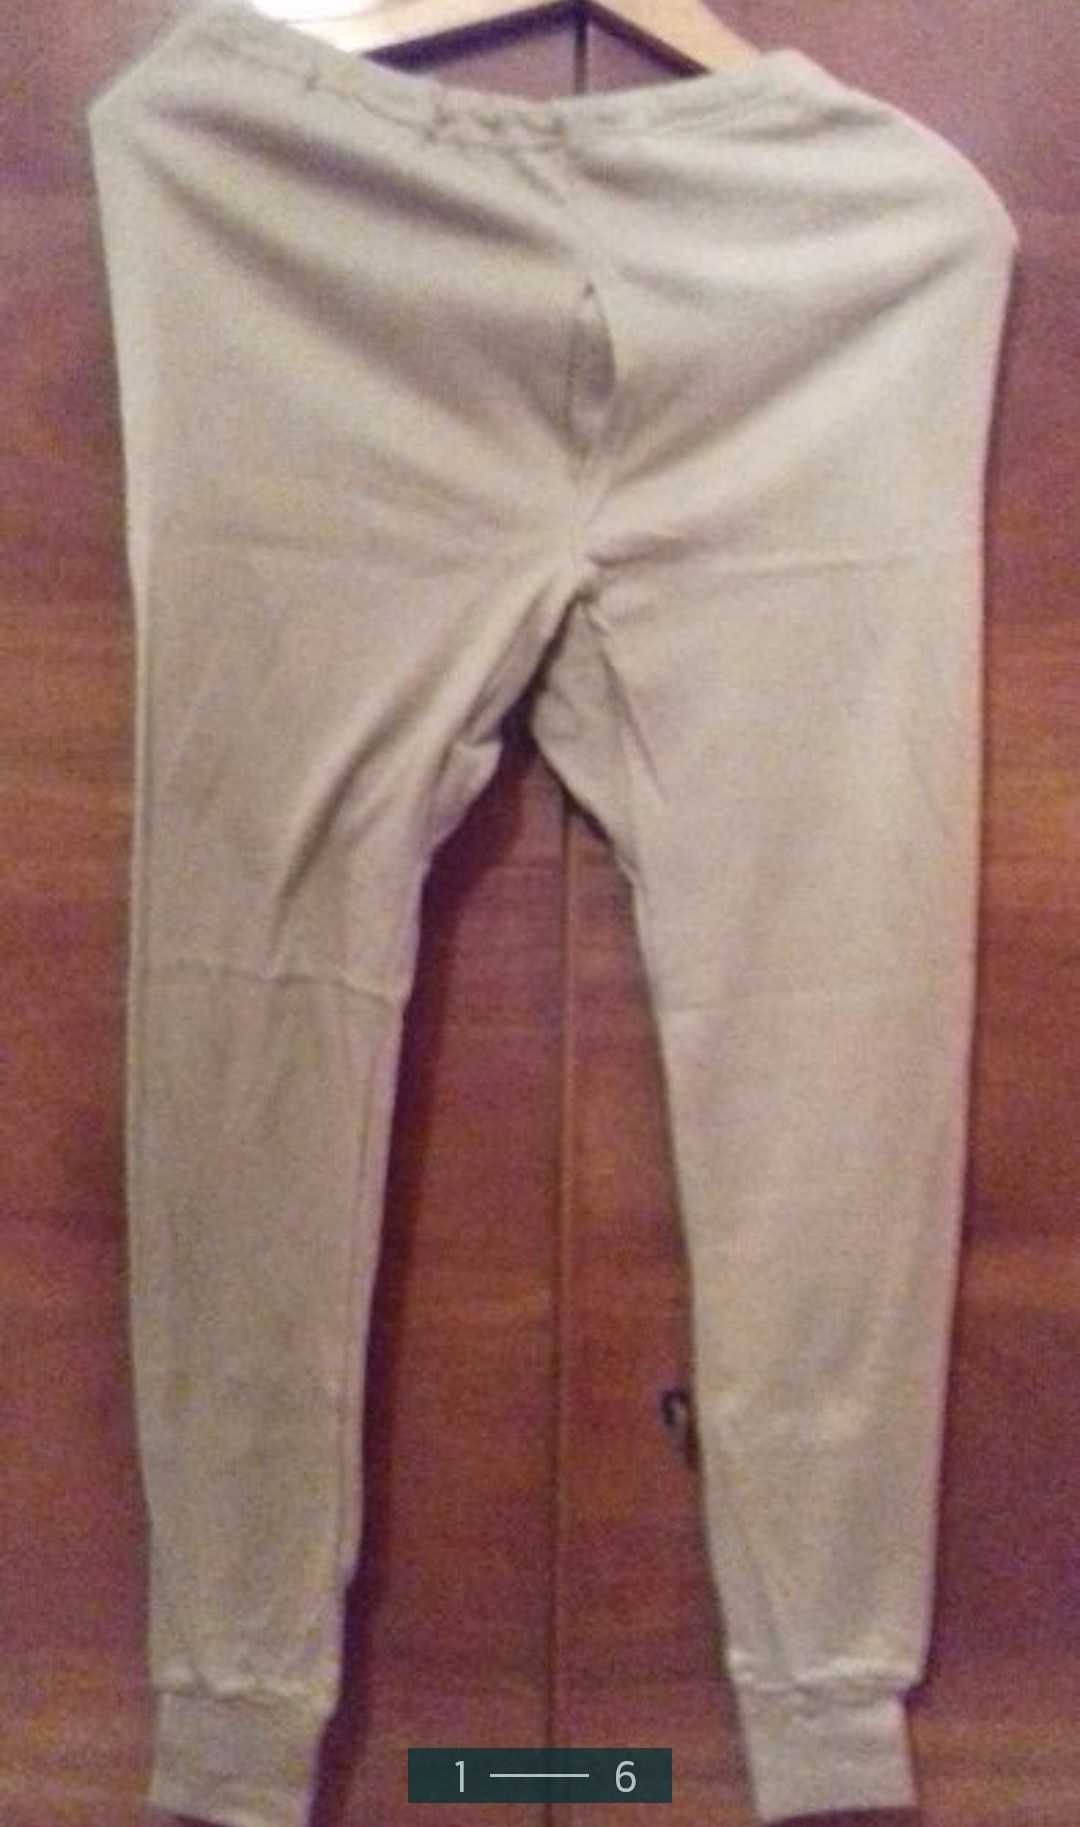 Тонкие нательные мужские штаны/бельё гиппоаллергенные